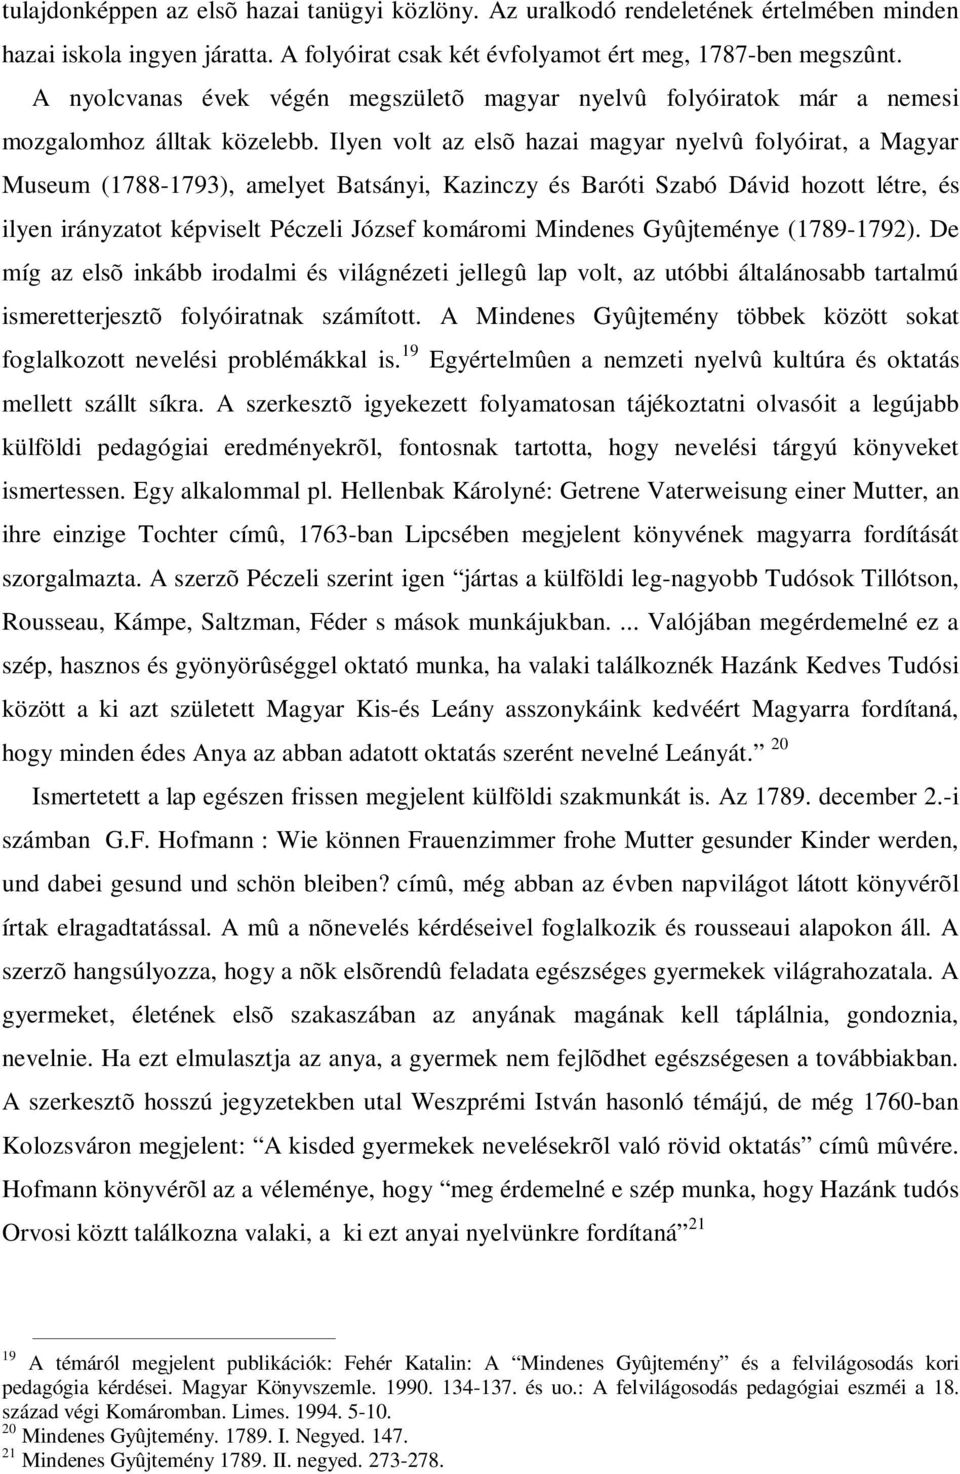 Ilyen volt az elsõ hazai magyar nyelvû folyóirat, a Magyar Museum (1788-1793), amelyet Batsányi, Kazinczy és Baróti Szabó Dávid hozott létre, és ilyen irányzatot képviselt Péczeli József komáromi